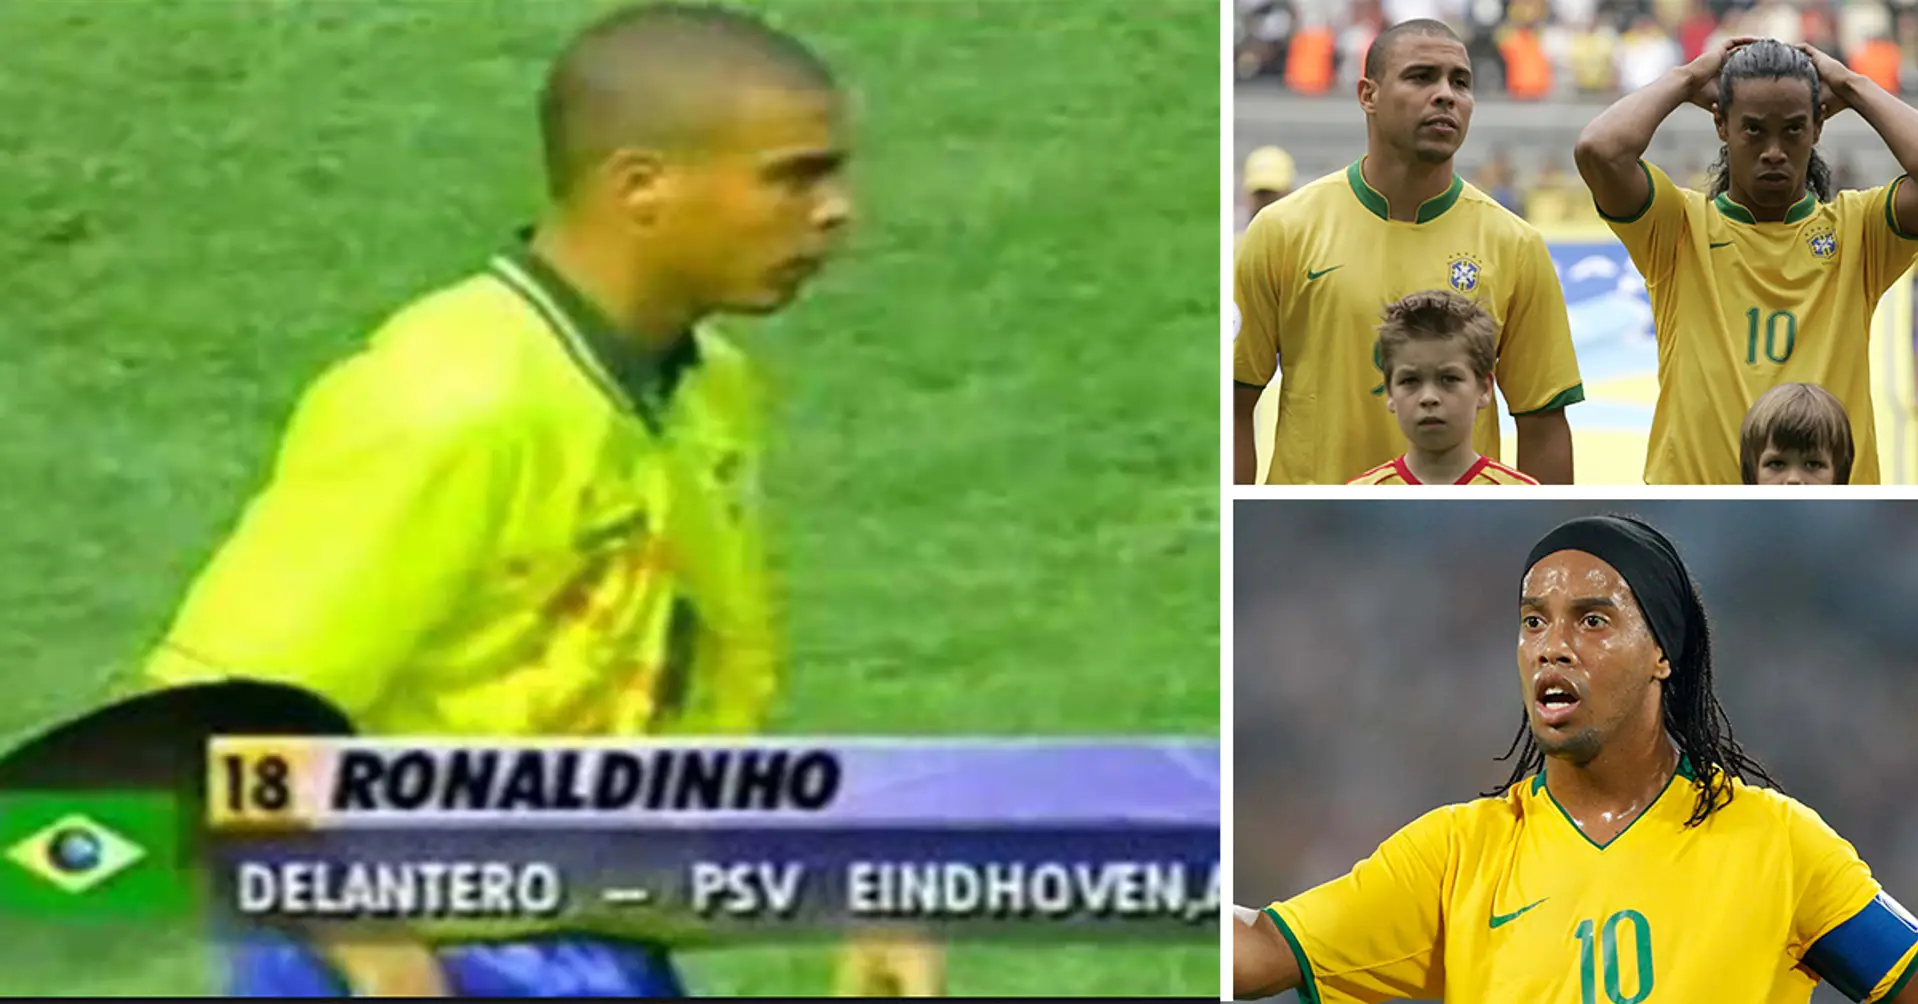 Ronaldo s'appelait autrefois Ronaldinho - tout cela à cause d'un défenseur central de Sao Paulo